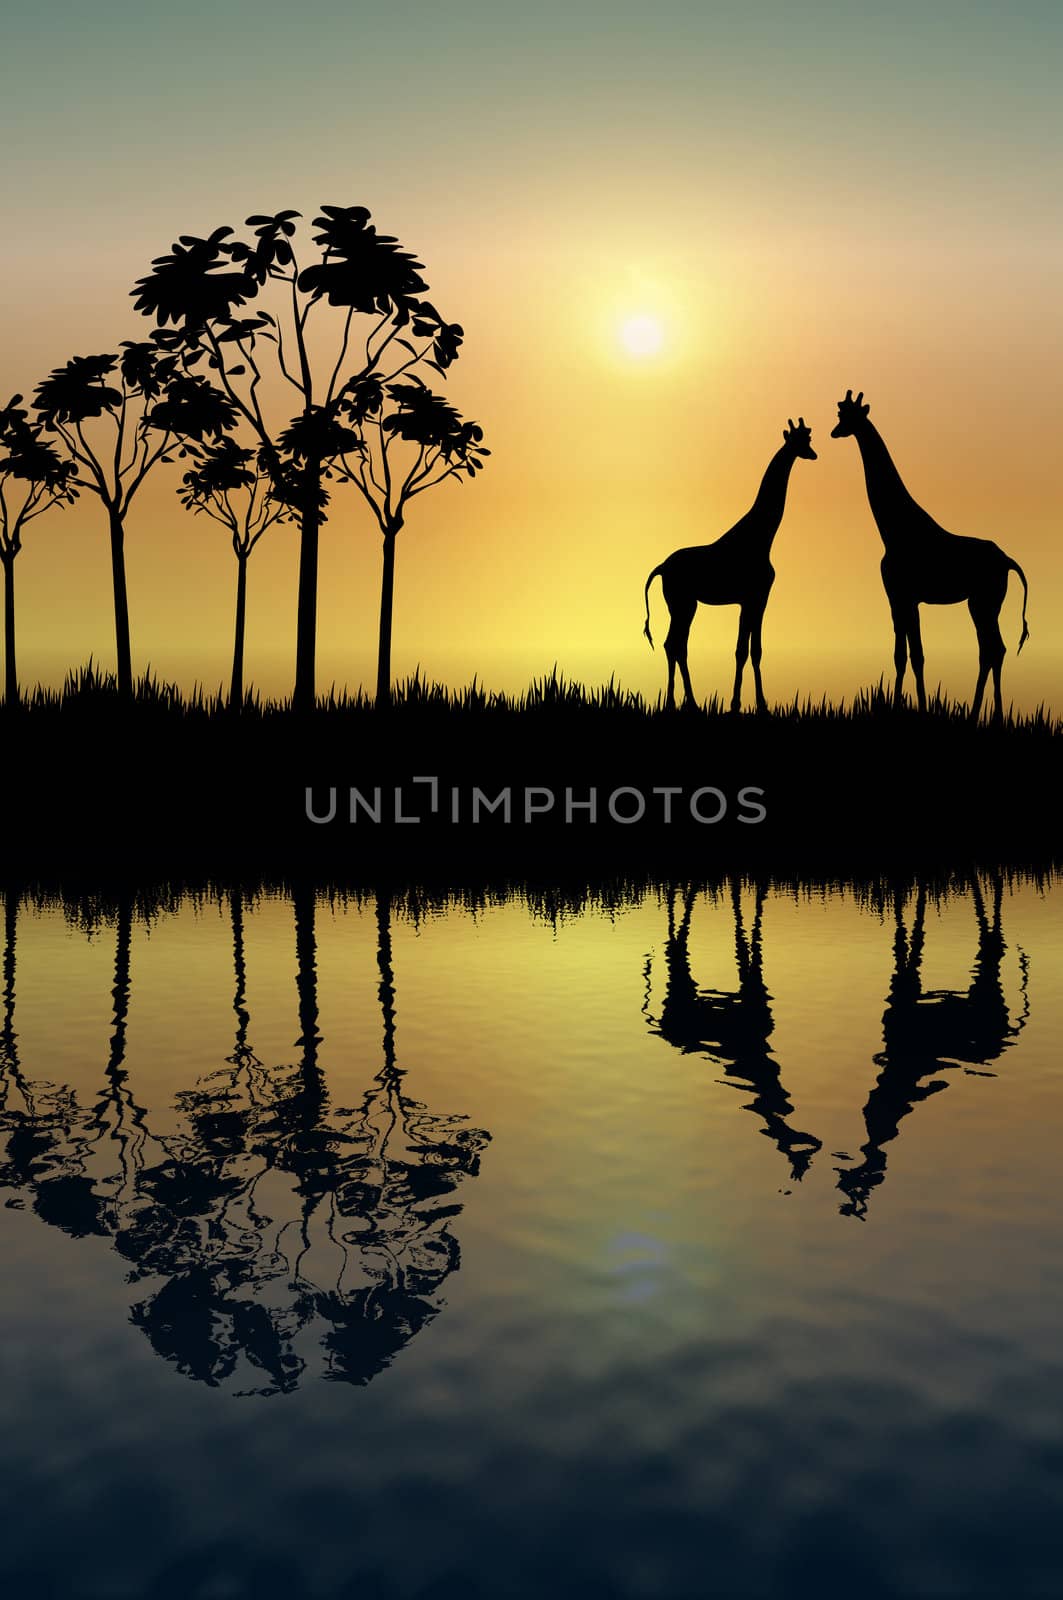 silhouette of two giraffes on grassy plain at sunrise
